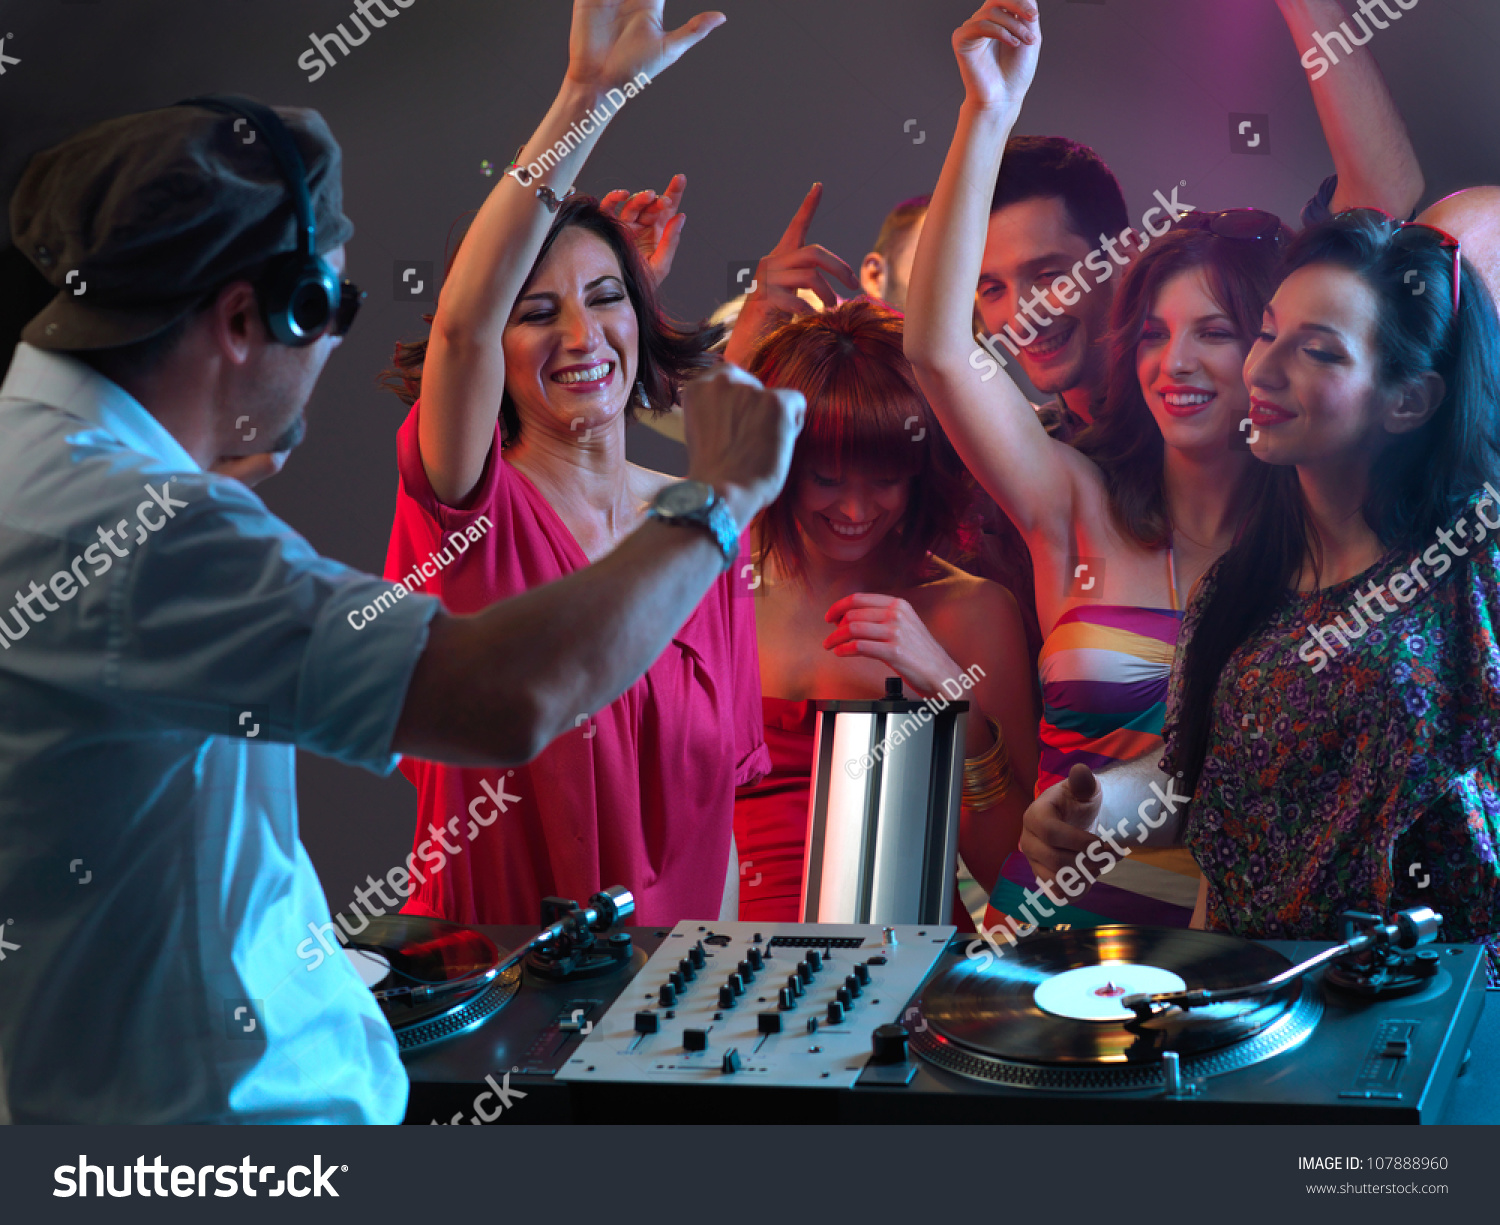 Sexy Young Women Dancing Flirting Dj Stock Photo 107888960 - Shutterstock